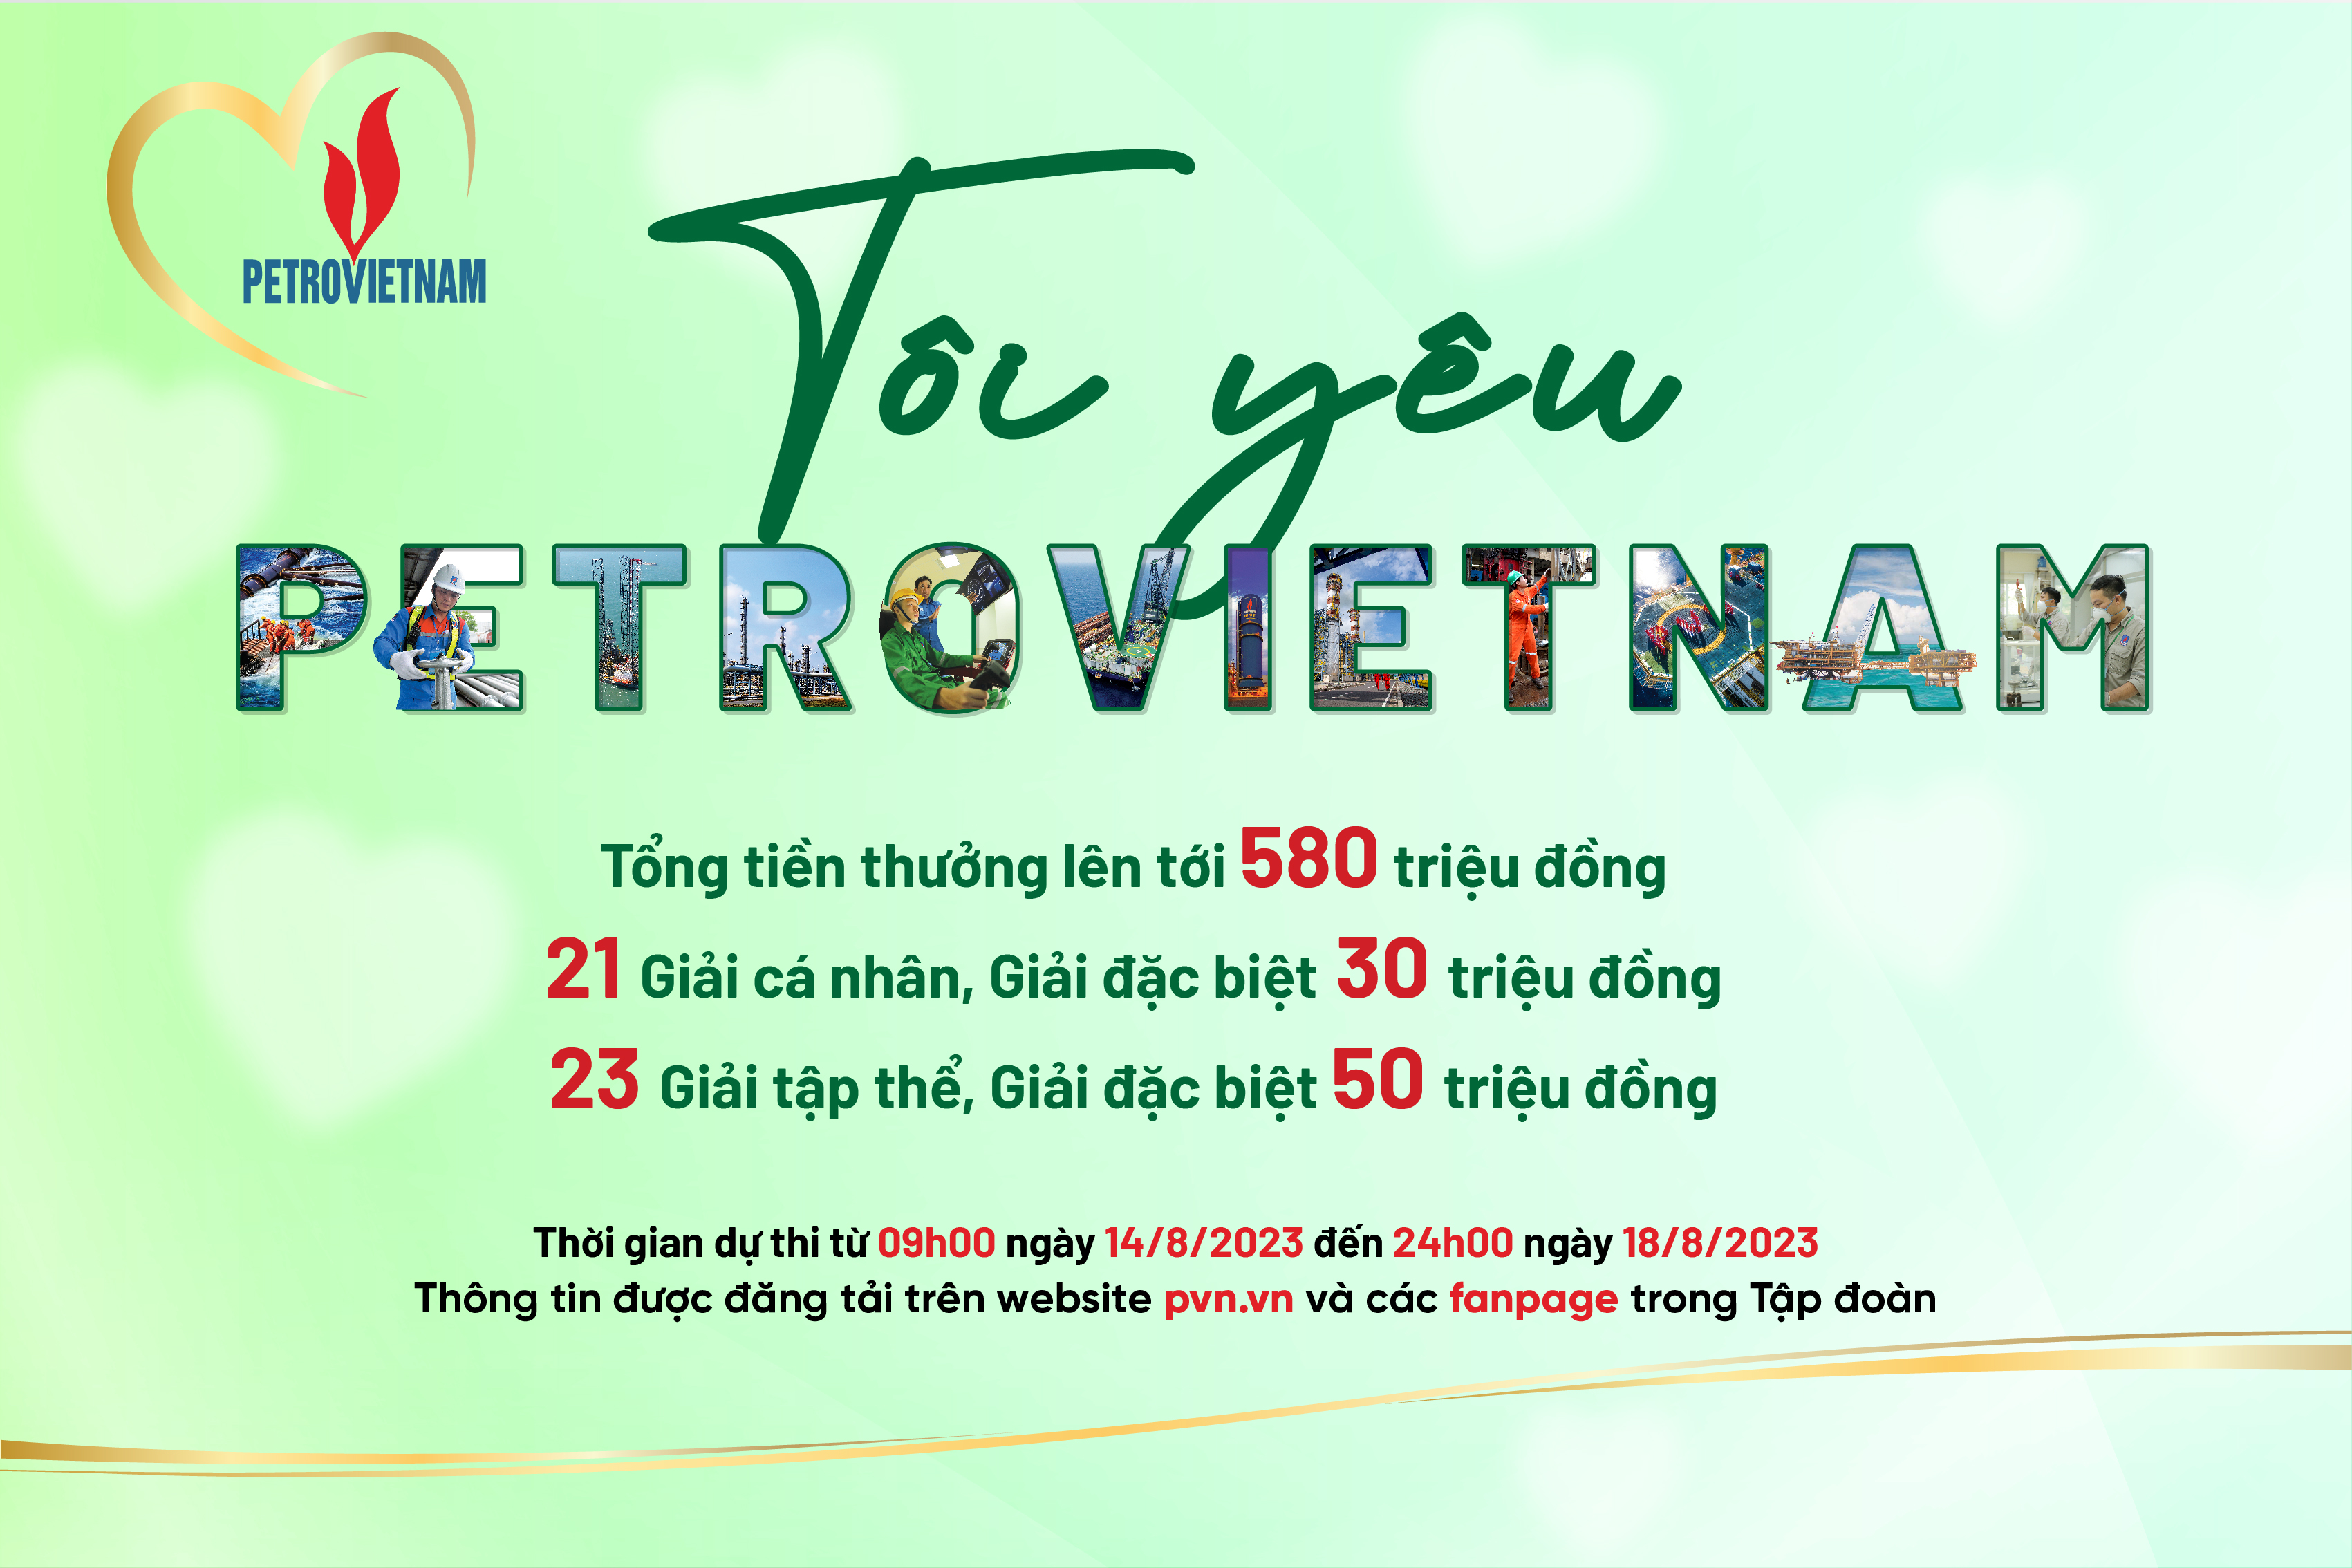 Petrovietnam sẽ tổ chức cuộc thi “Tôi yêu Petrovietnam”